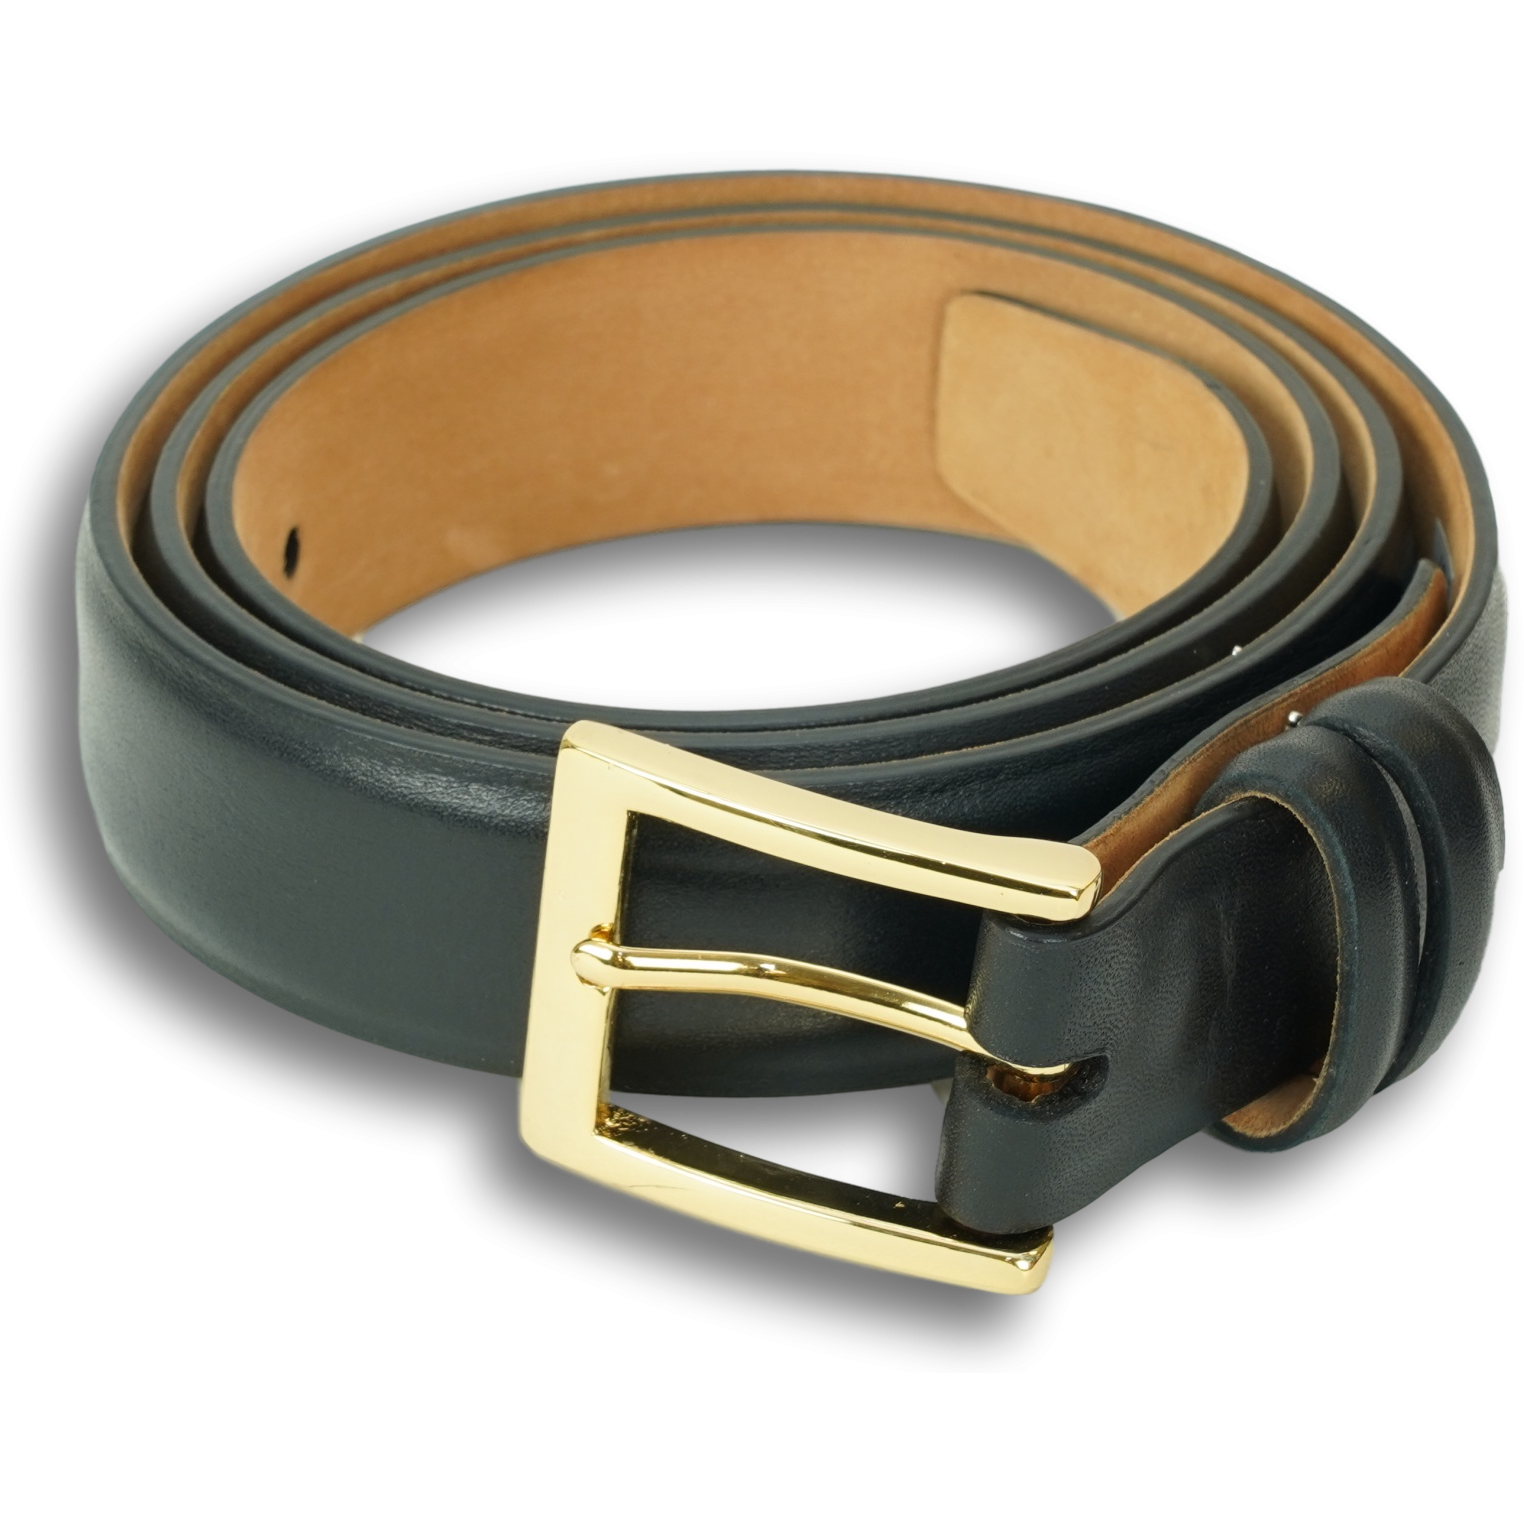 1 1/4" Semi-Matte Calfskin Belt with Brass Buckle